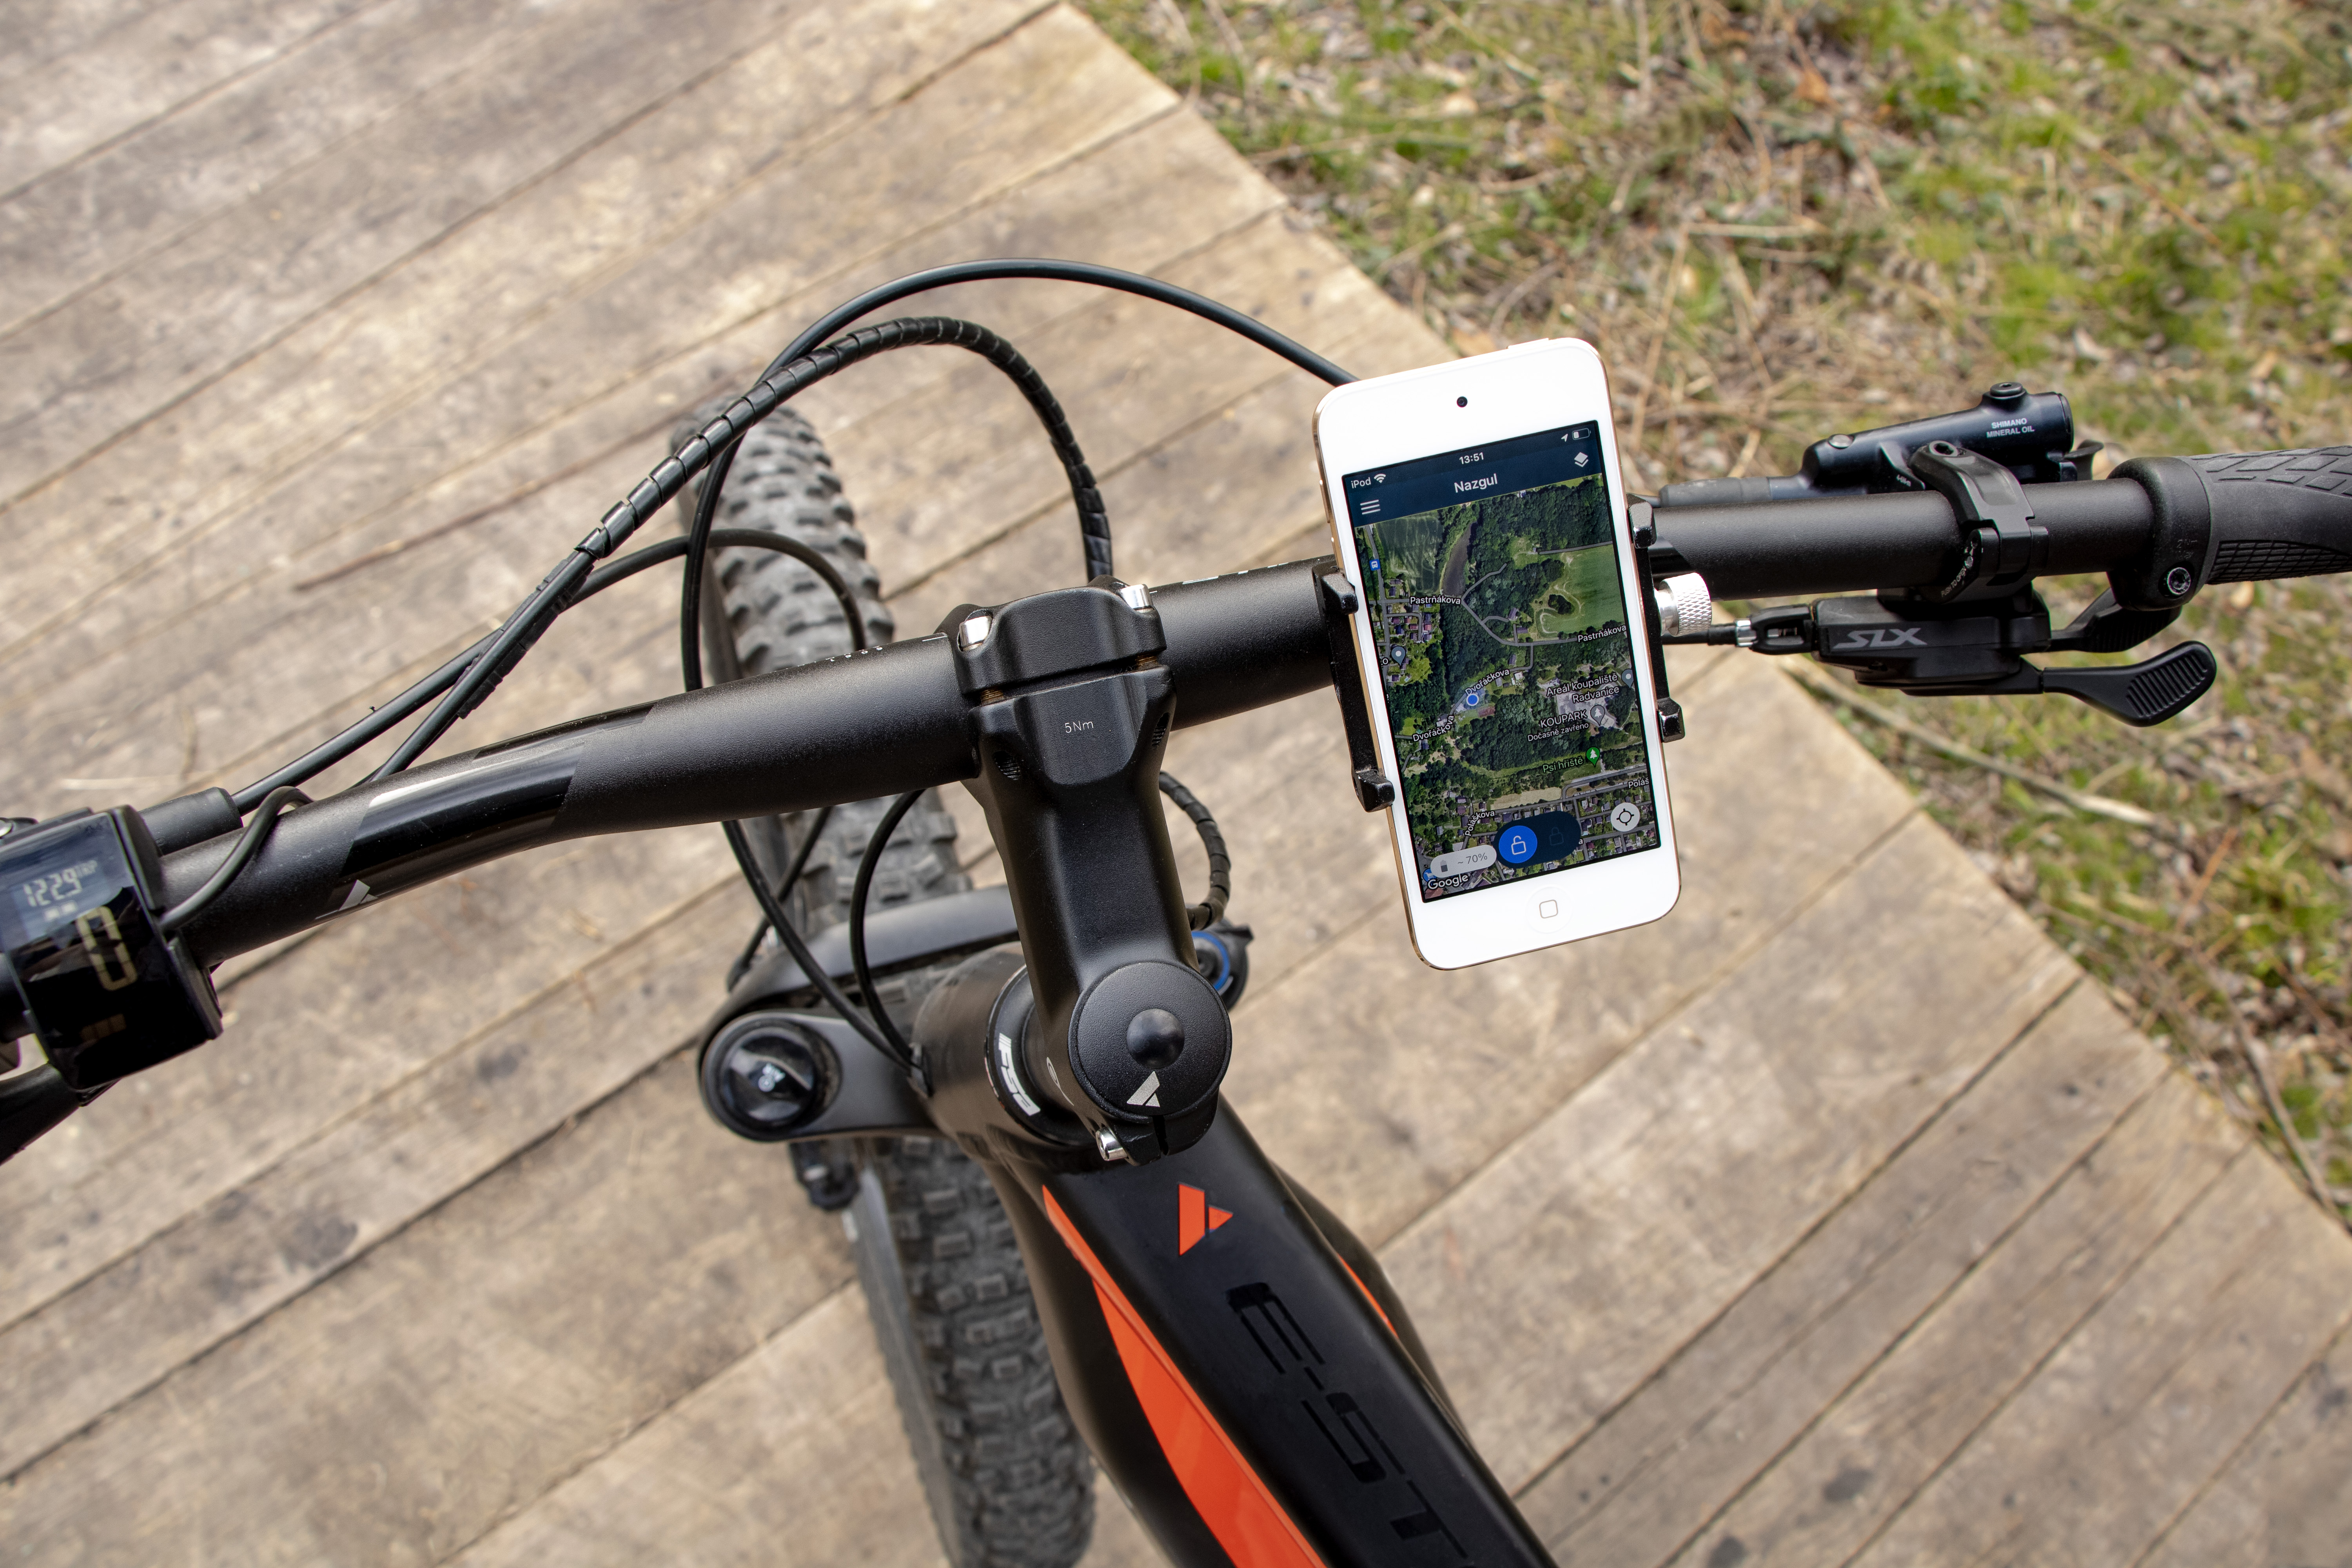 BikeTrax Shimano bicicletta GPS tracker, antifurto